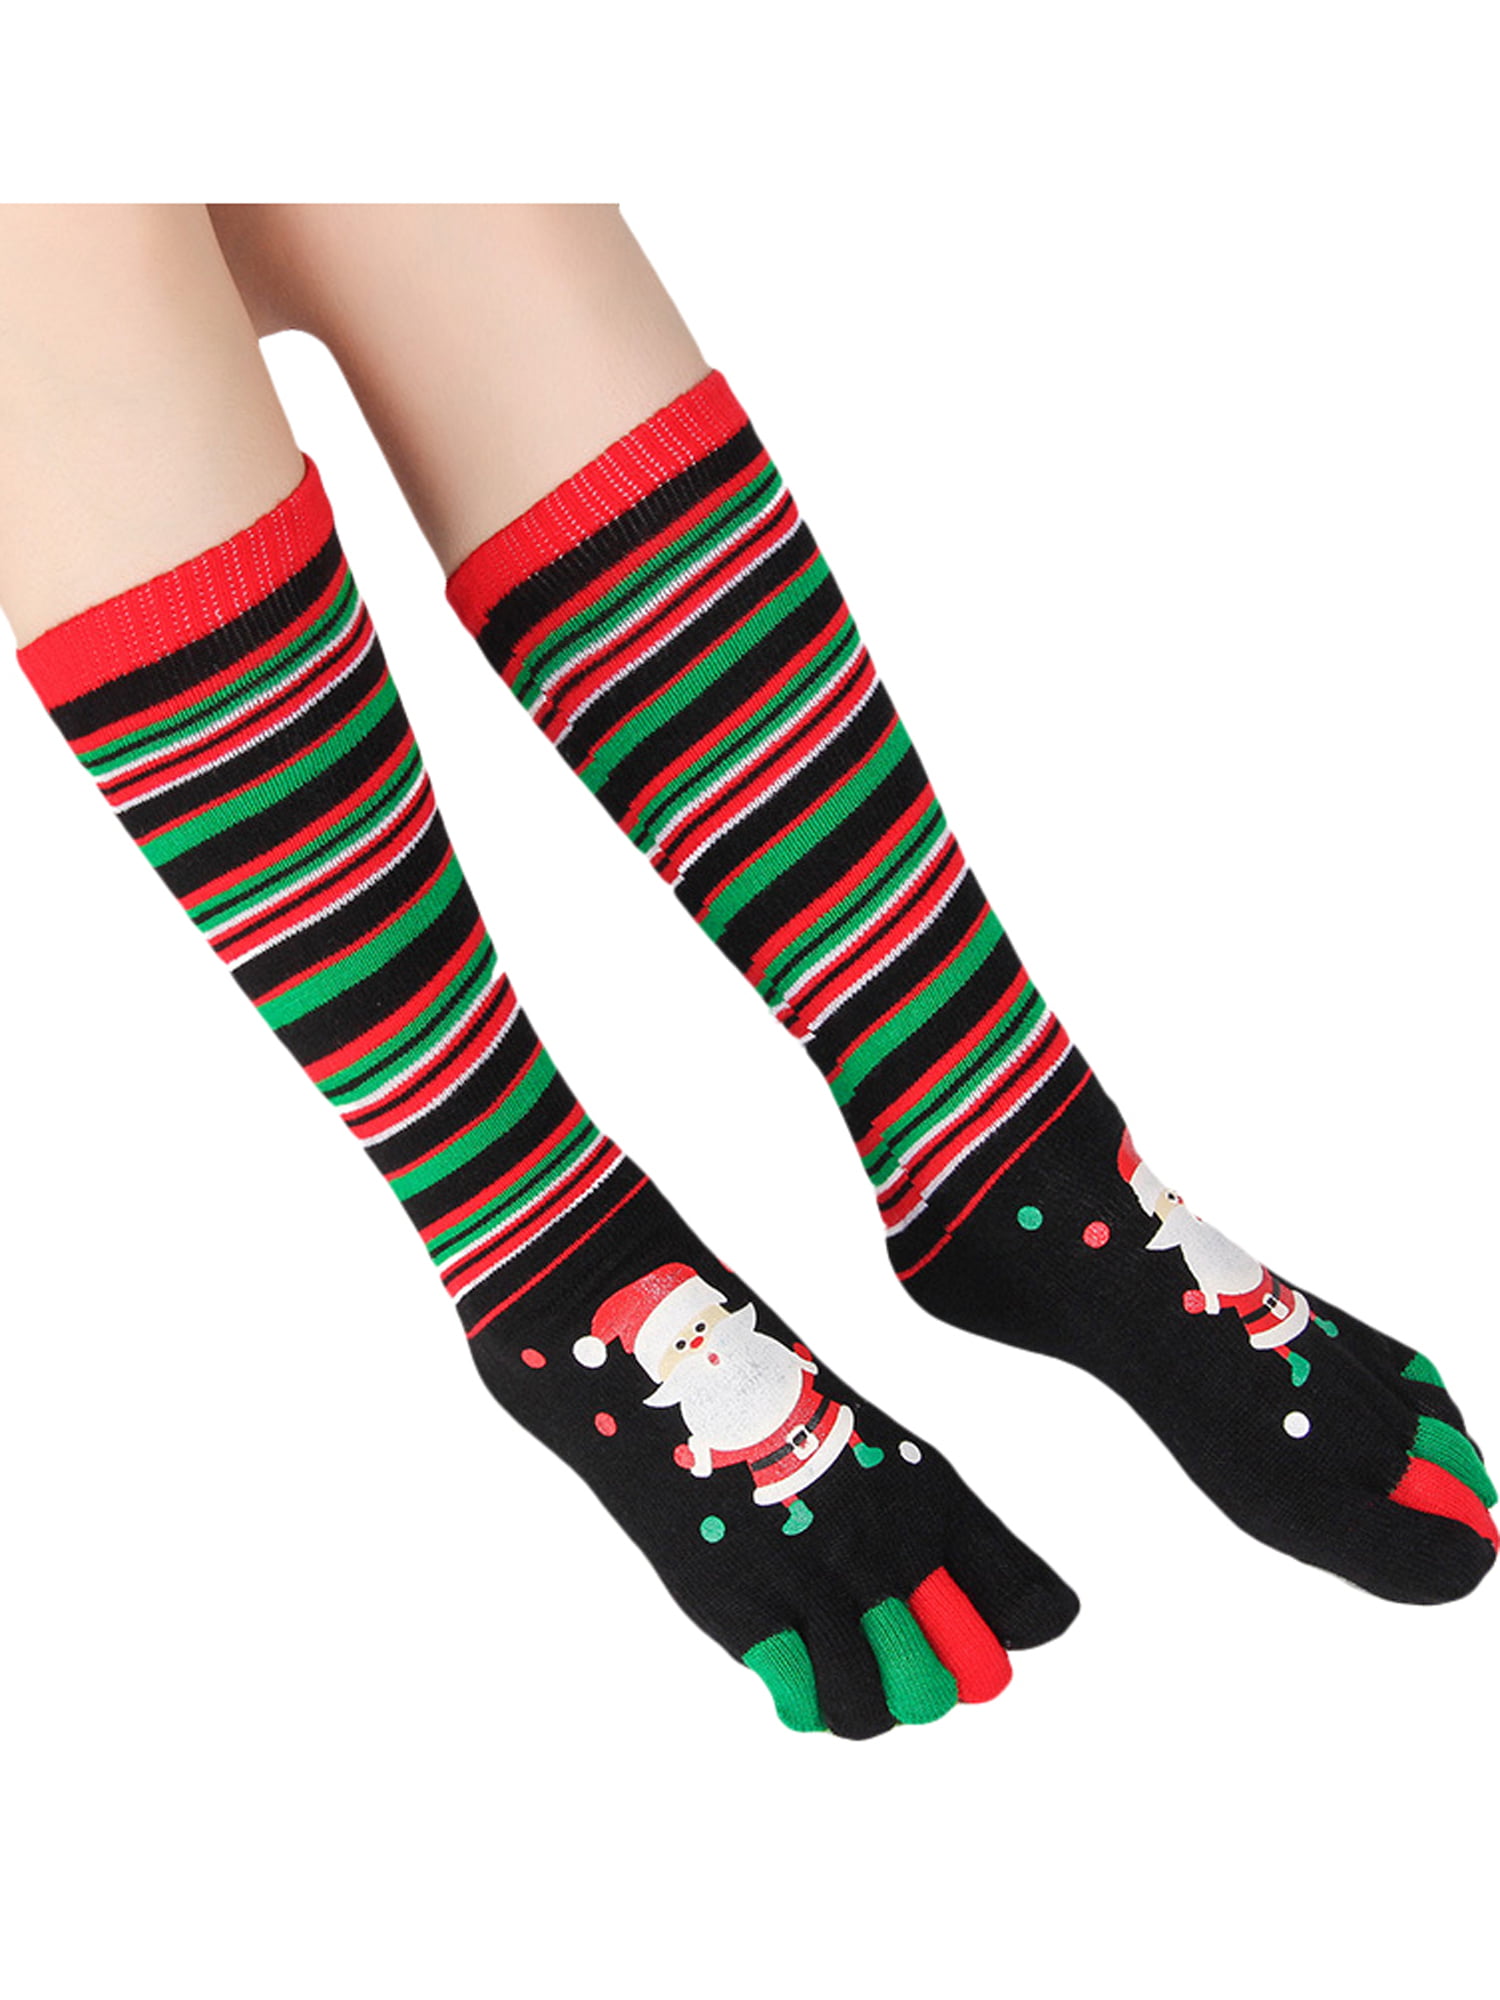 Christmas Deer Cotton Casual Colorful Fun Below Knee High Athletic Socks 